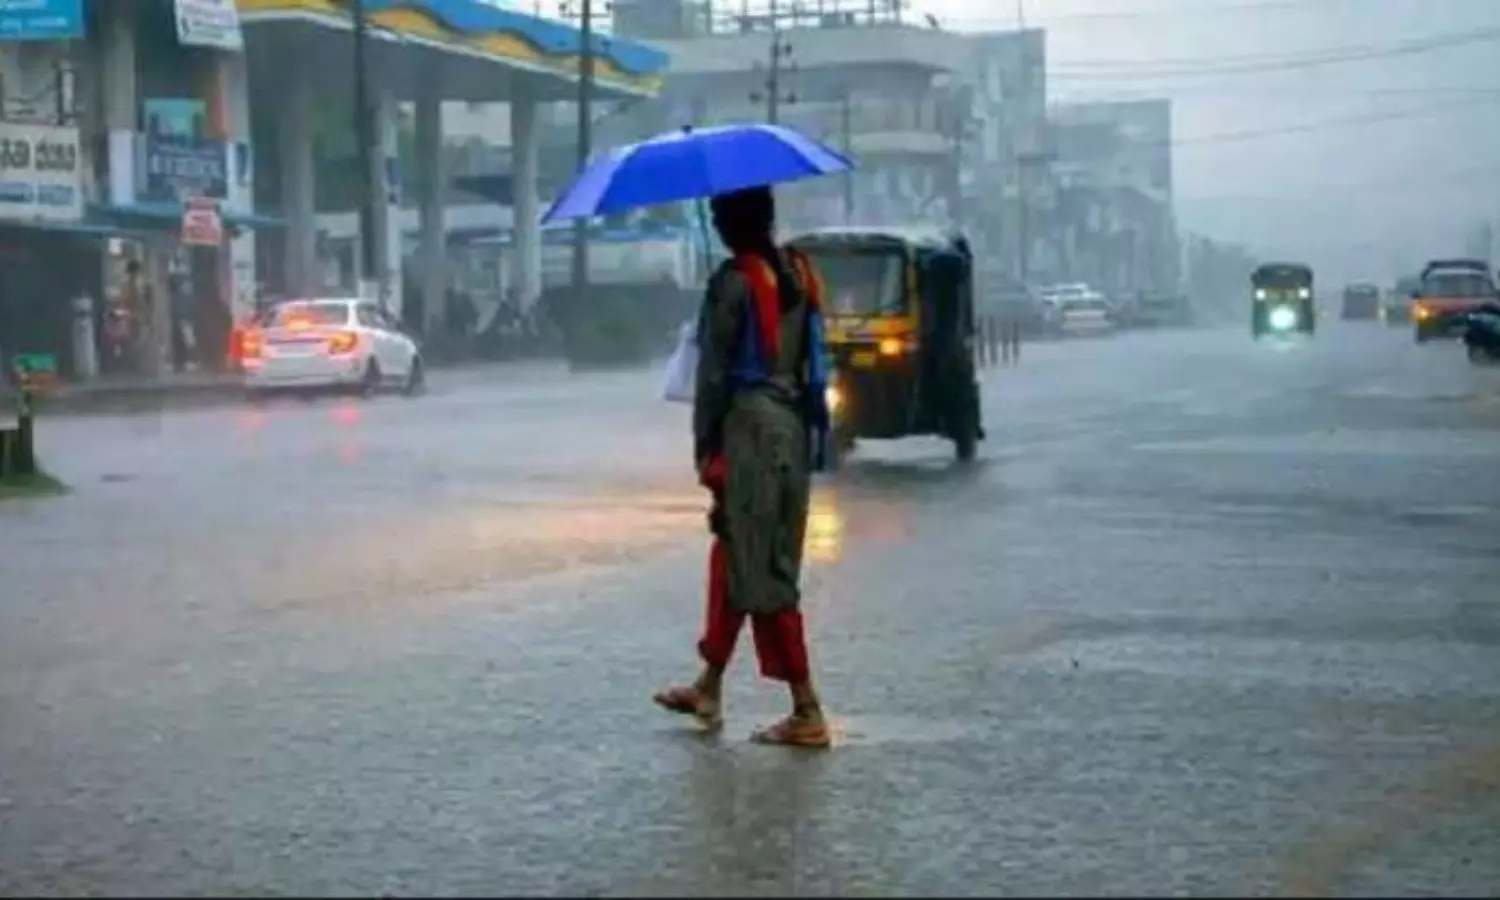 MP Monsoon Update : एमपी में छाया मानसून, आज भी 11 जिलों में बारिश का अलर्ट